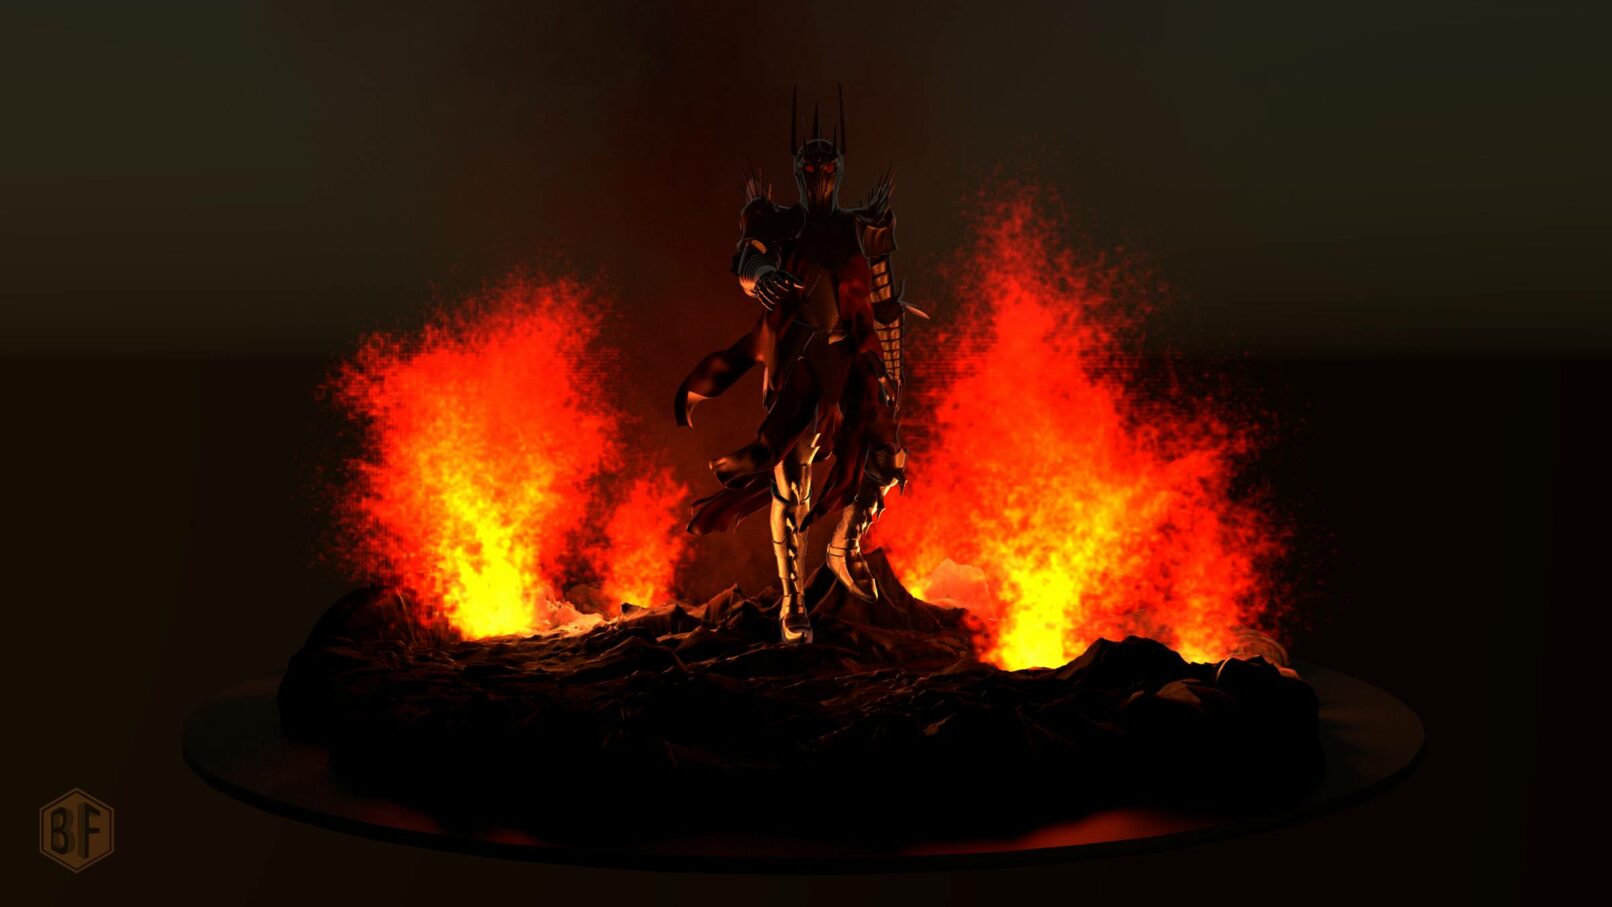 Modèle 3D de Sauron. Mise en scène dans une simulation Mantaflow.